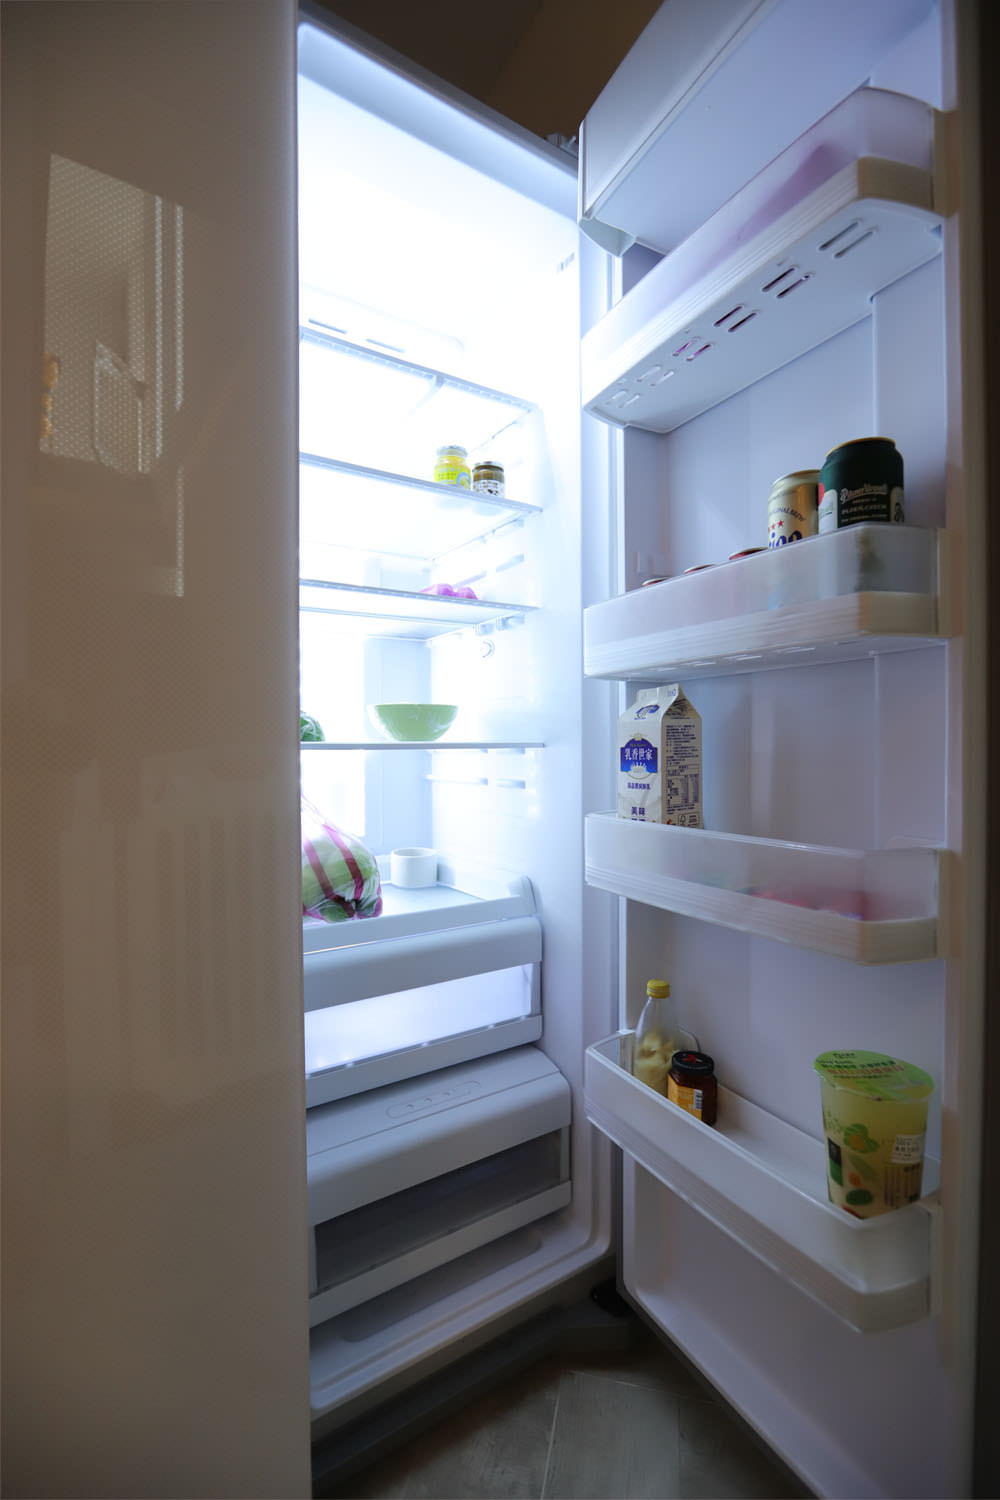 [家電] 結合時尚美型與機能讓家中美感提升的大冰箱-惠而浦對開門冰箱惠而浦WHS600LW 創易對開門冰箱